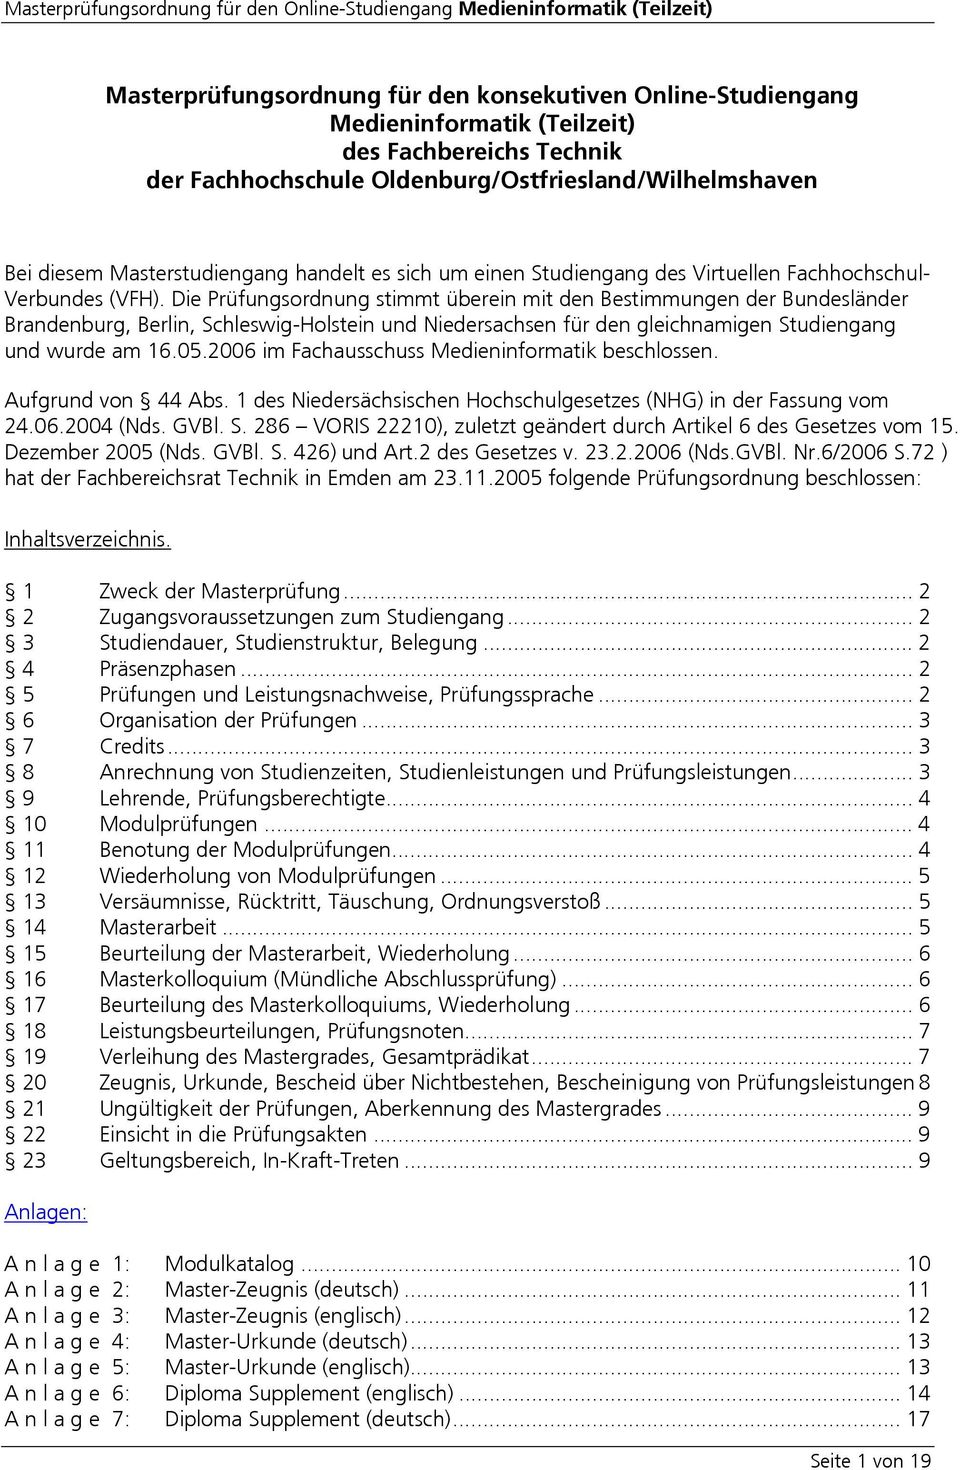 Die Prüfungsordnung stimmt überein mit den Bestimmungen der Bundesländer Brandenburg, Berlin, Schleswig-Holstein und Niedersachsen für den gleichnamigen Studiengang und wurde am 16.05.